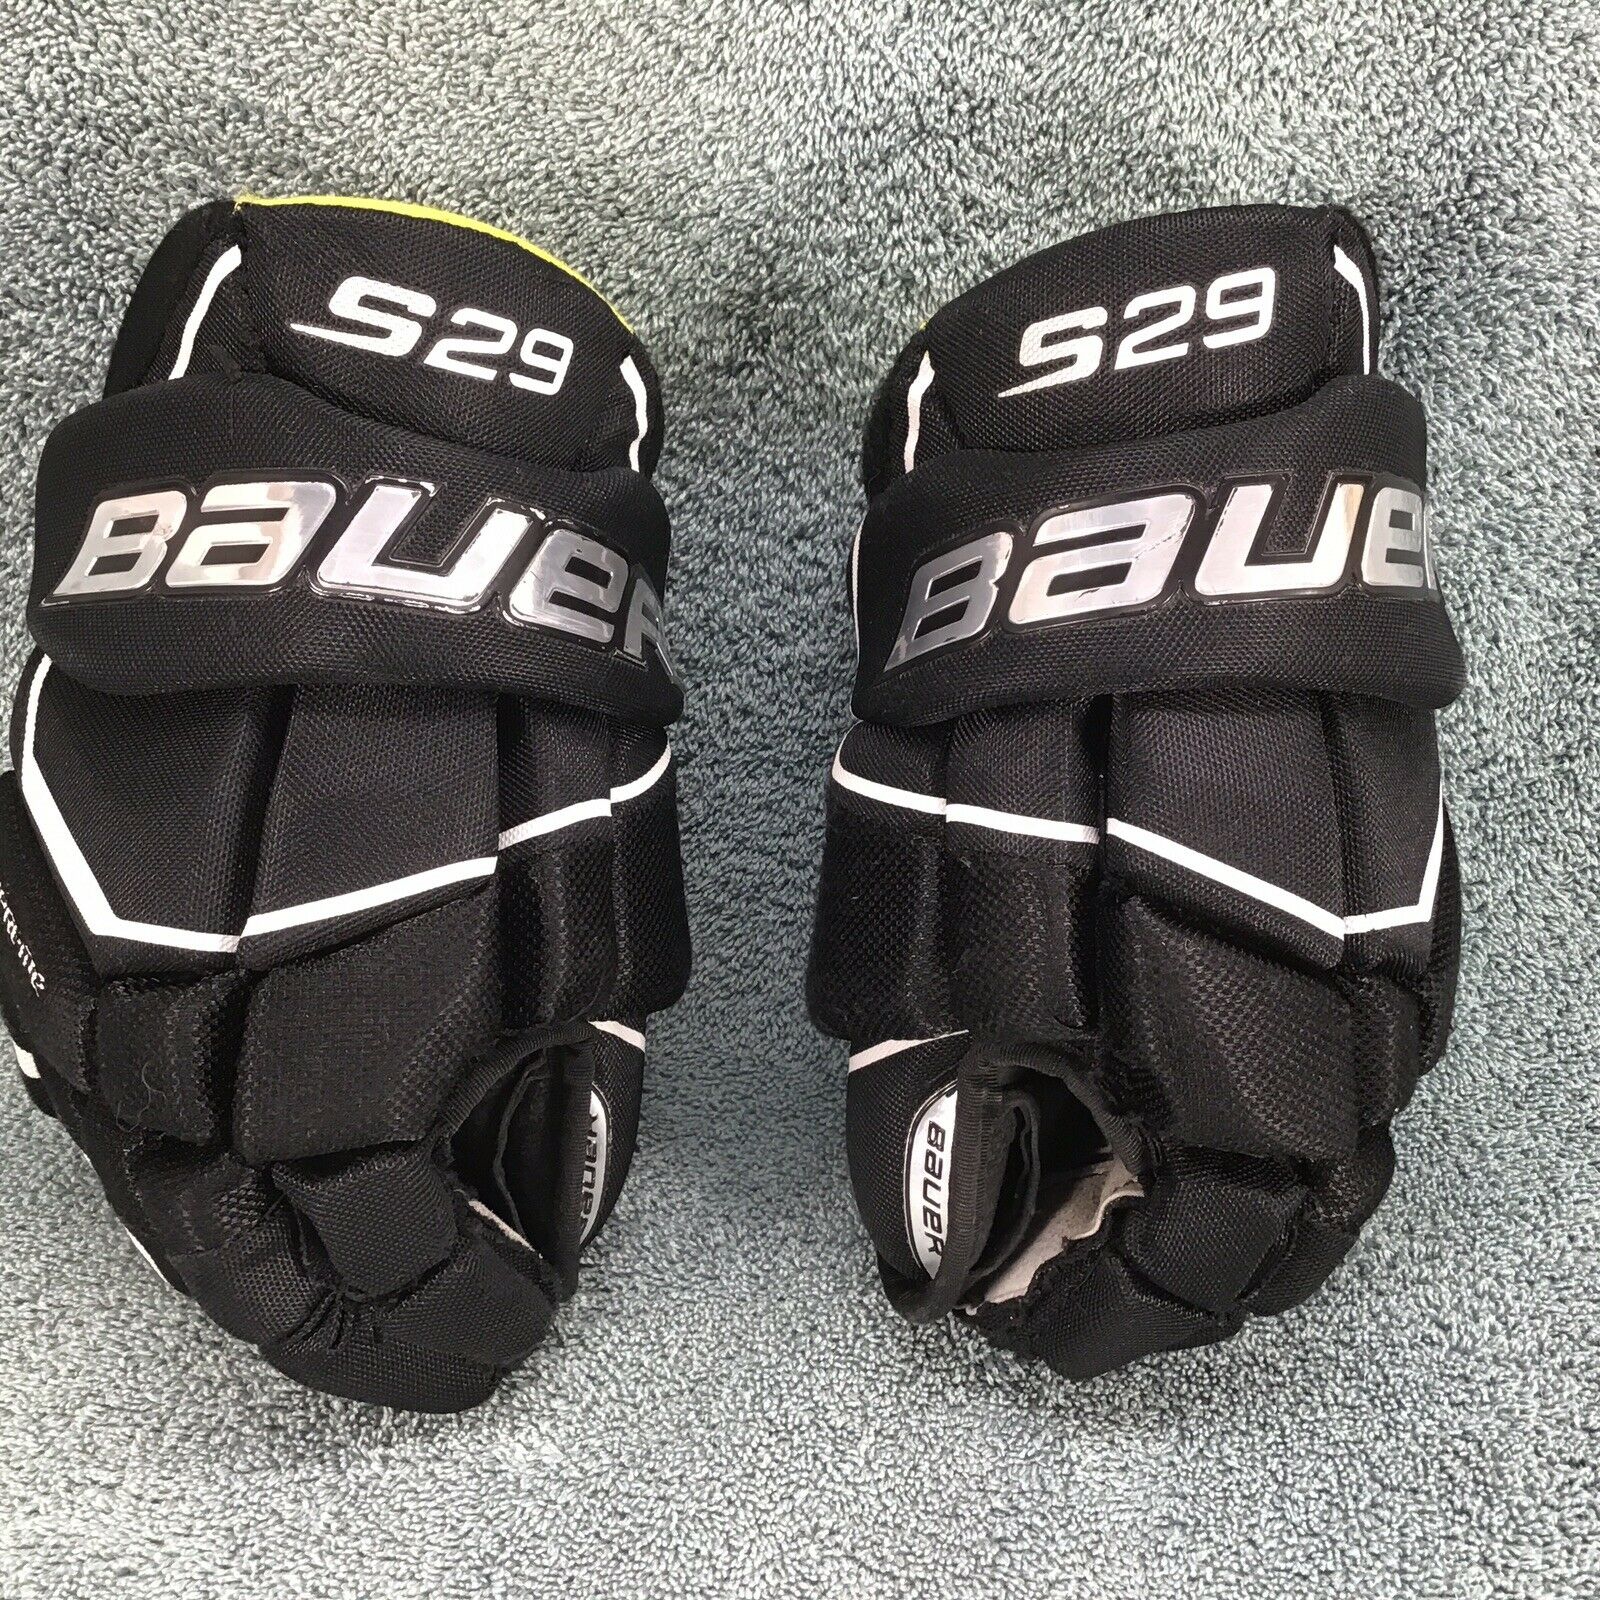 Bauer Supreme S19 S29 Ice Hockey Gloves Black Junior Size 12" 30 Cm 1054621